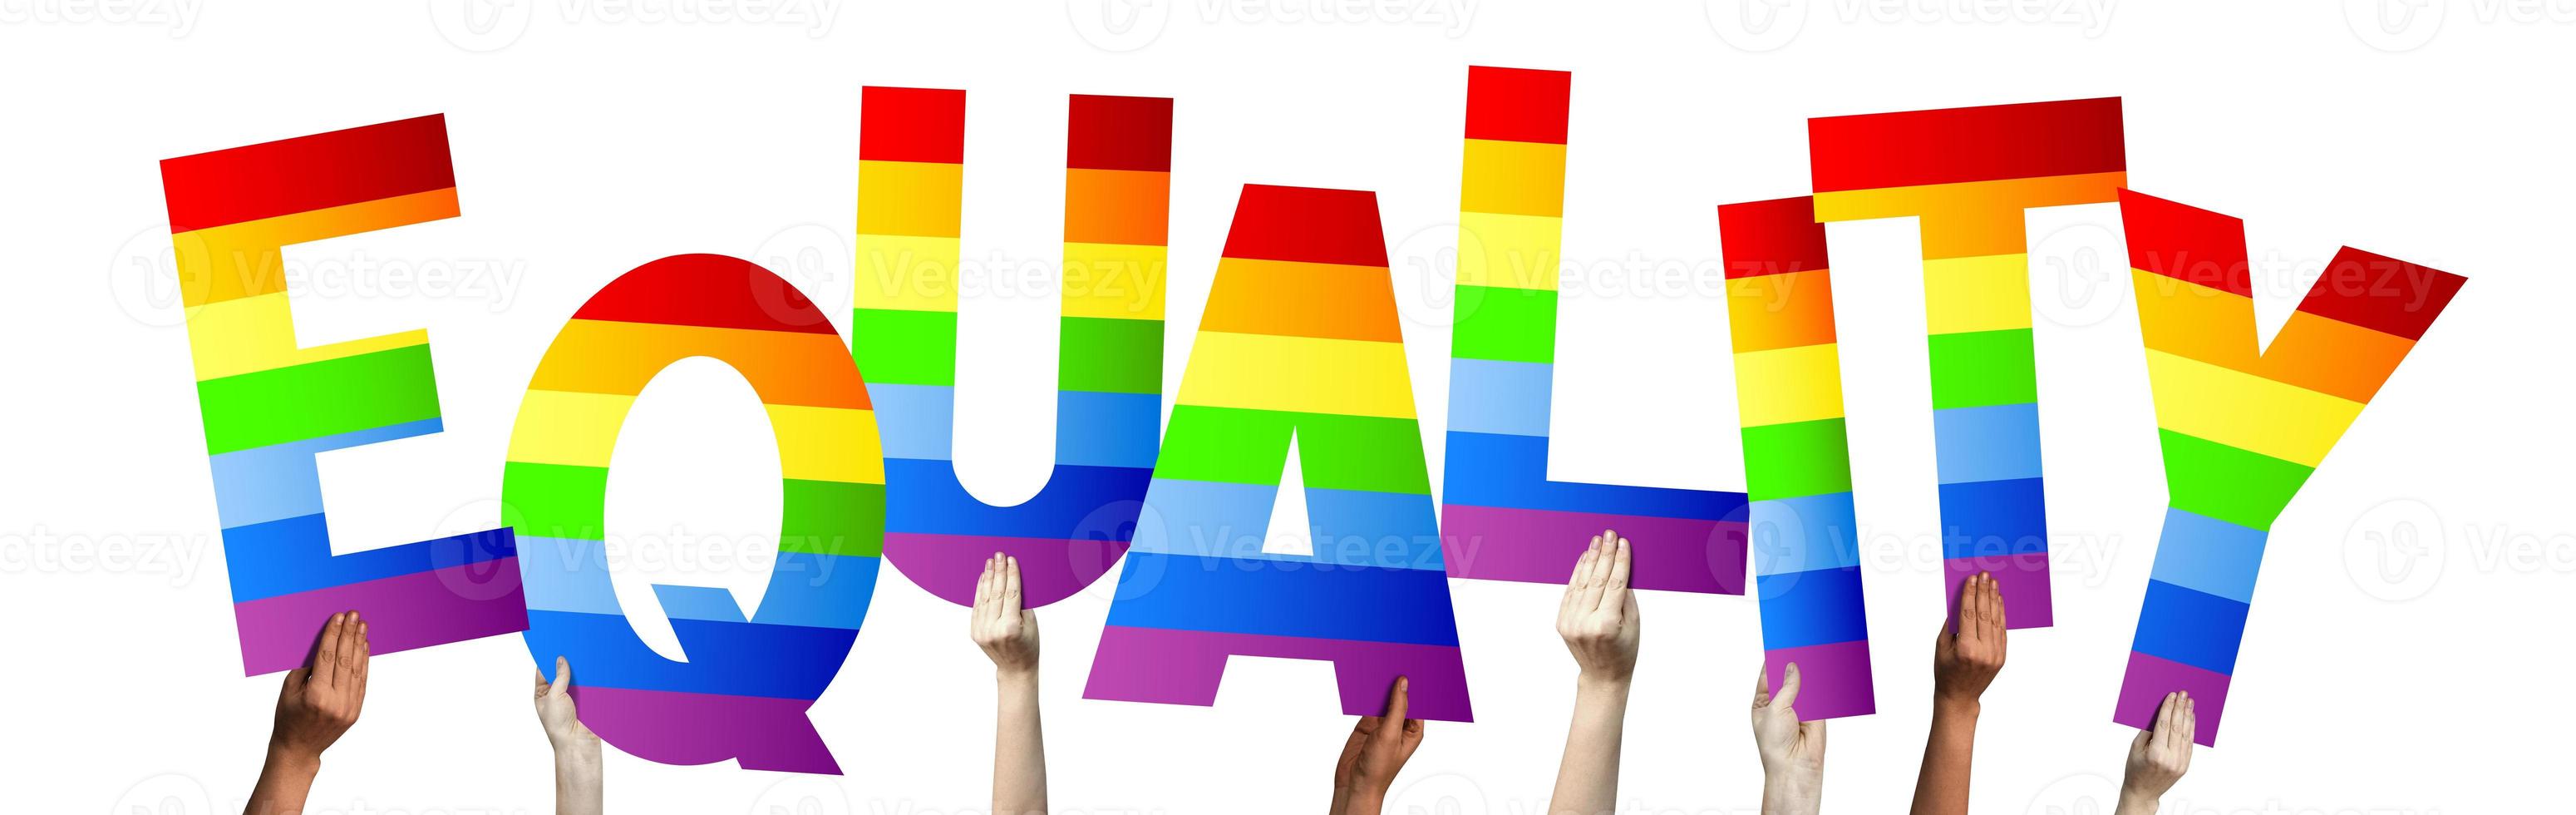 égalité, lgbt bannière - Humain mains en portant coloré des lettres photo